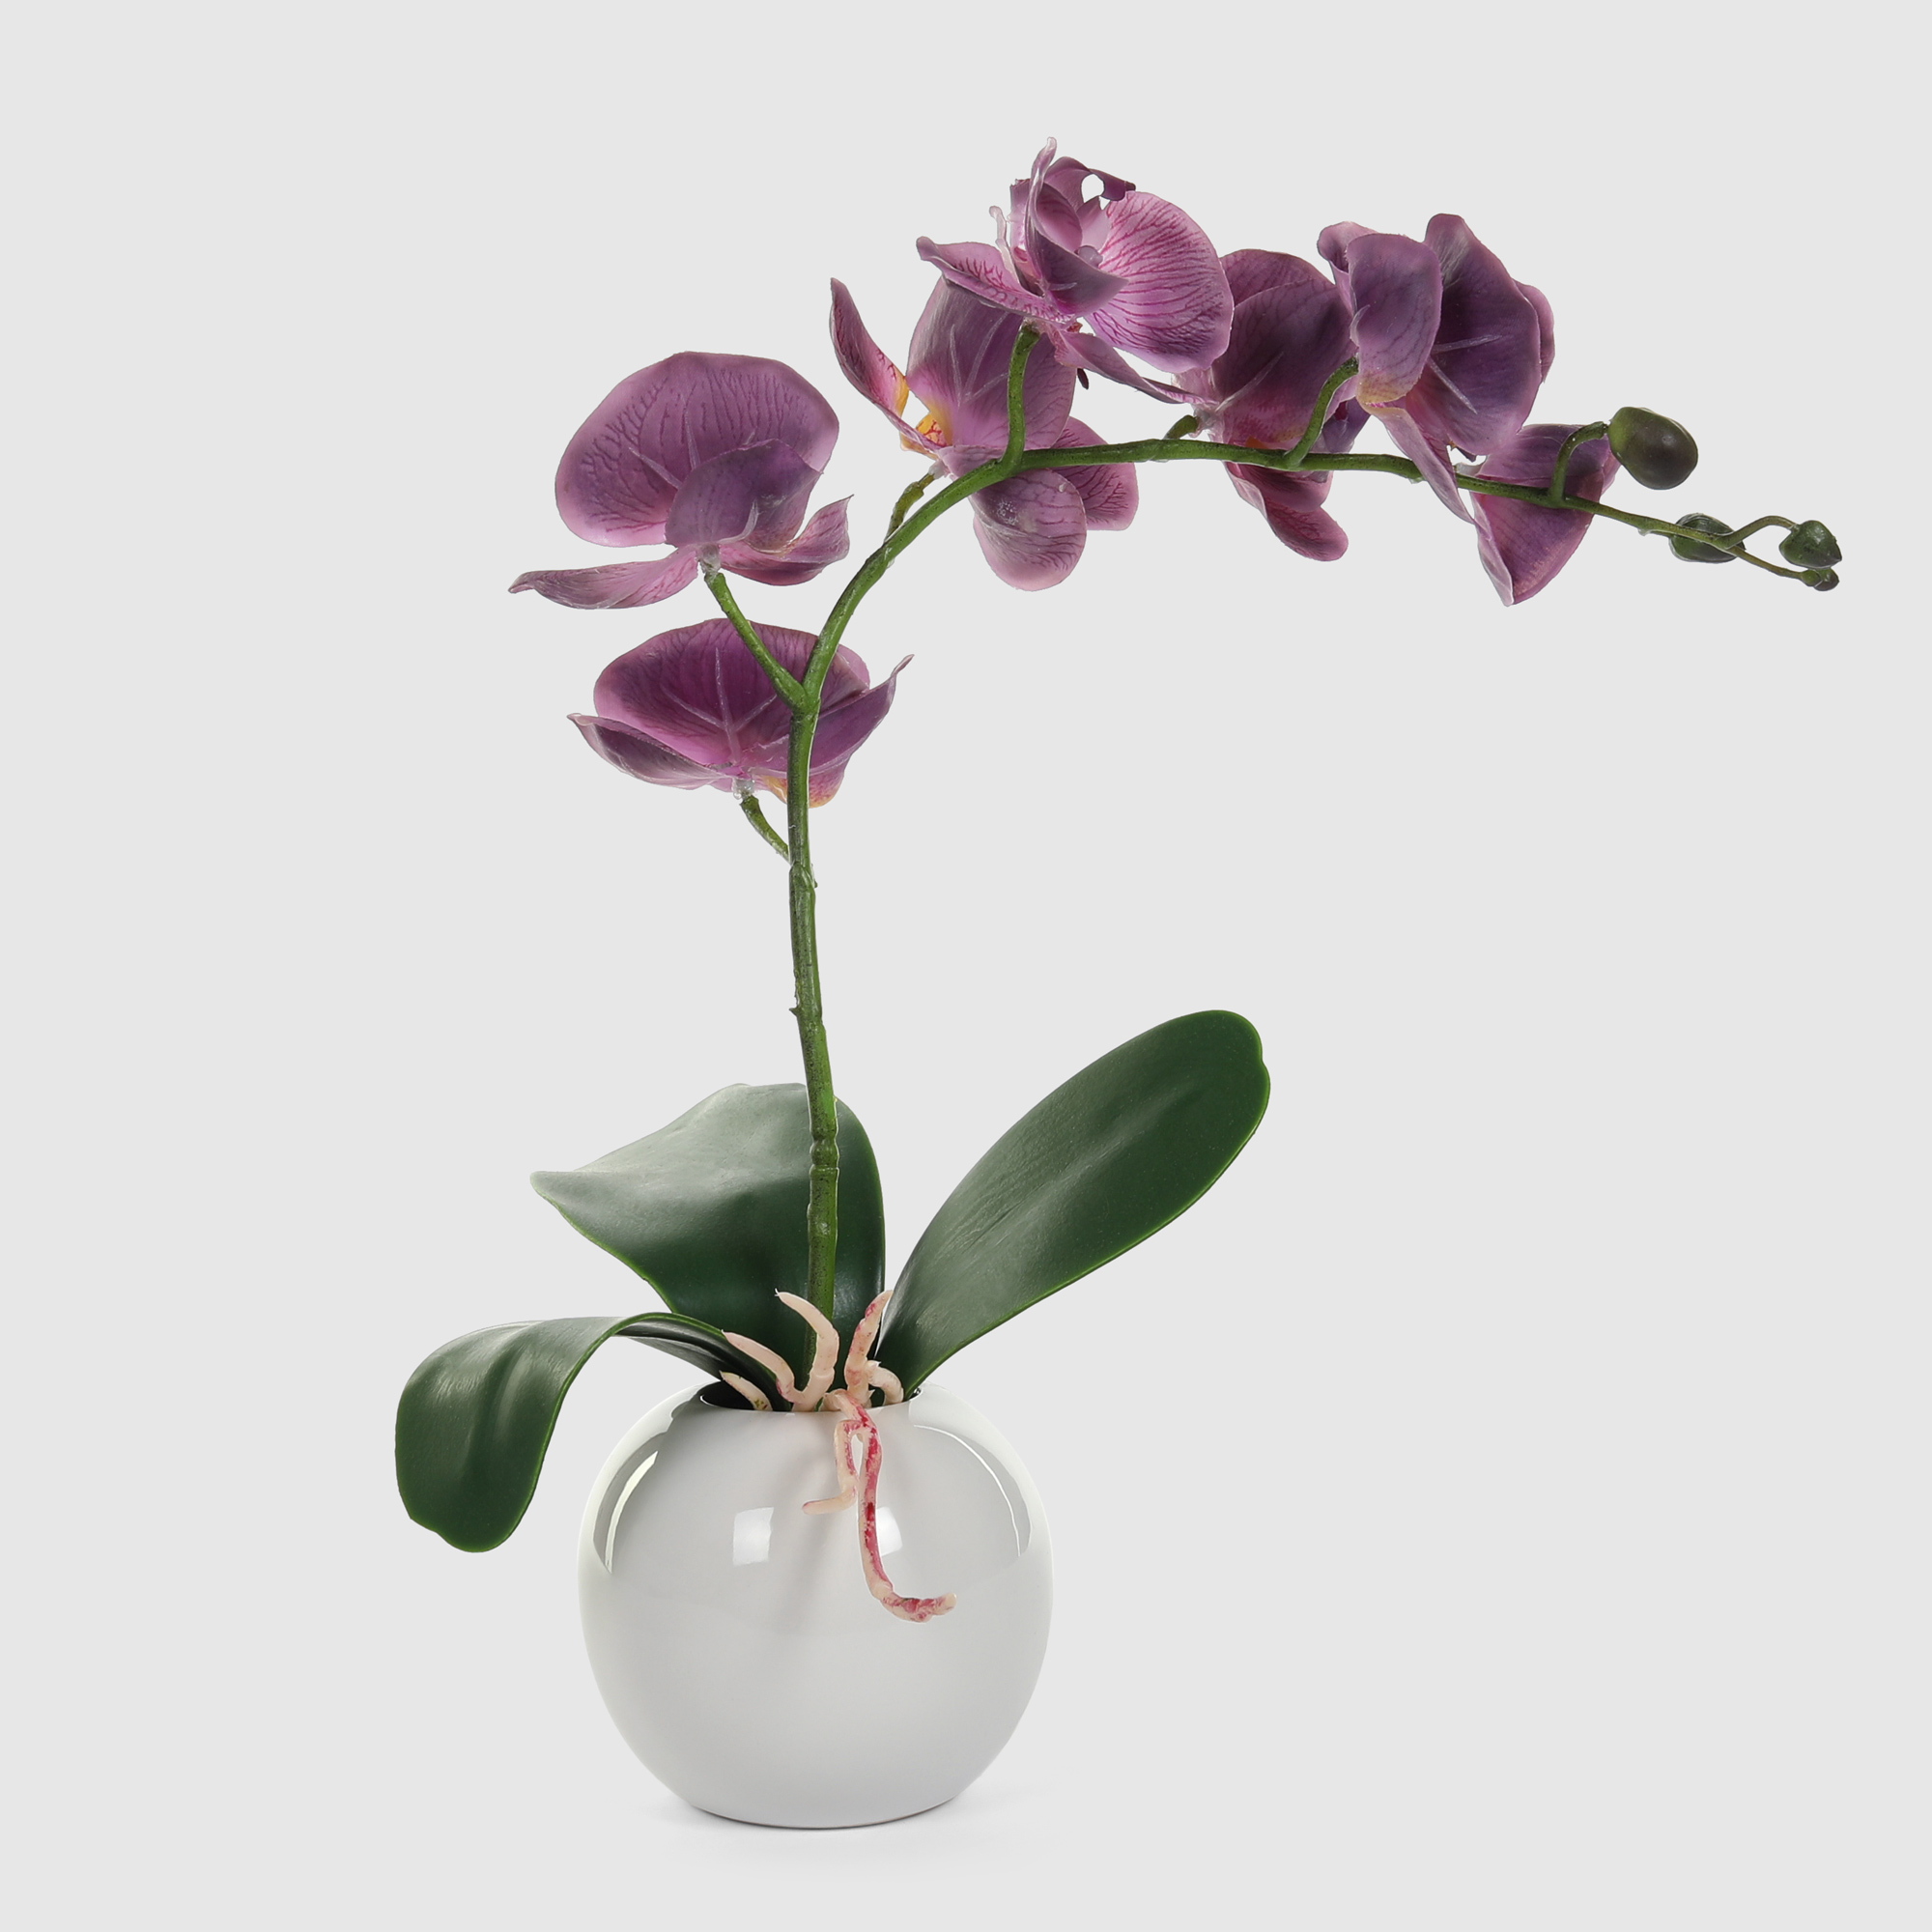 Орхидея в белом кашпо Конэко-О 572_10163185 40 см орхидея фаленопсис конэко о в кашпо 70 см